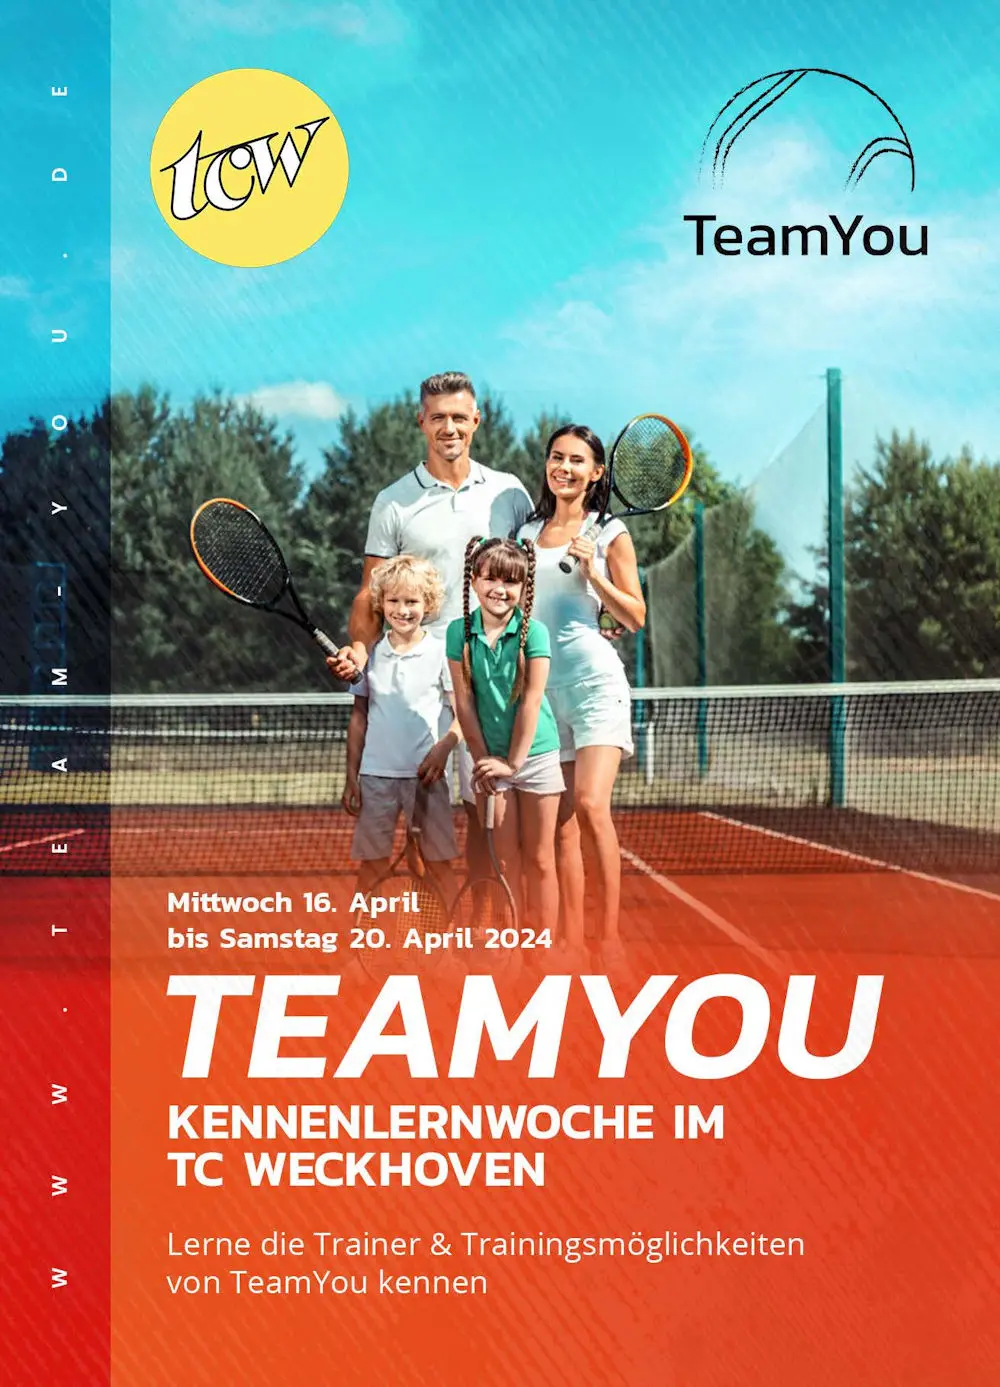 Tennisschule TeamYou bietet "Kennenlernwoche" im TCW an